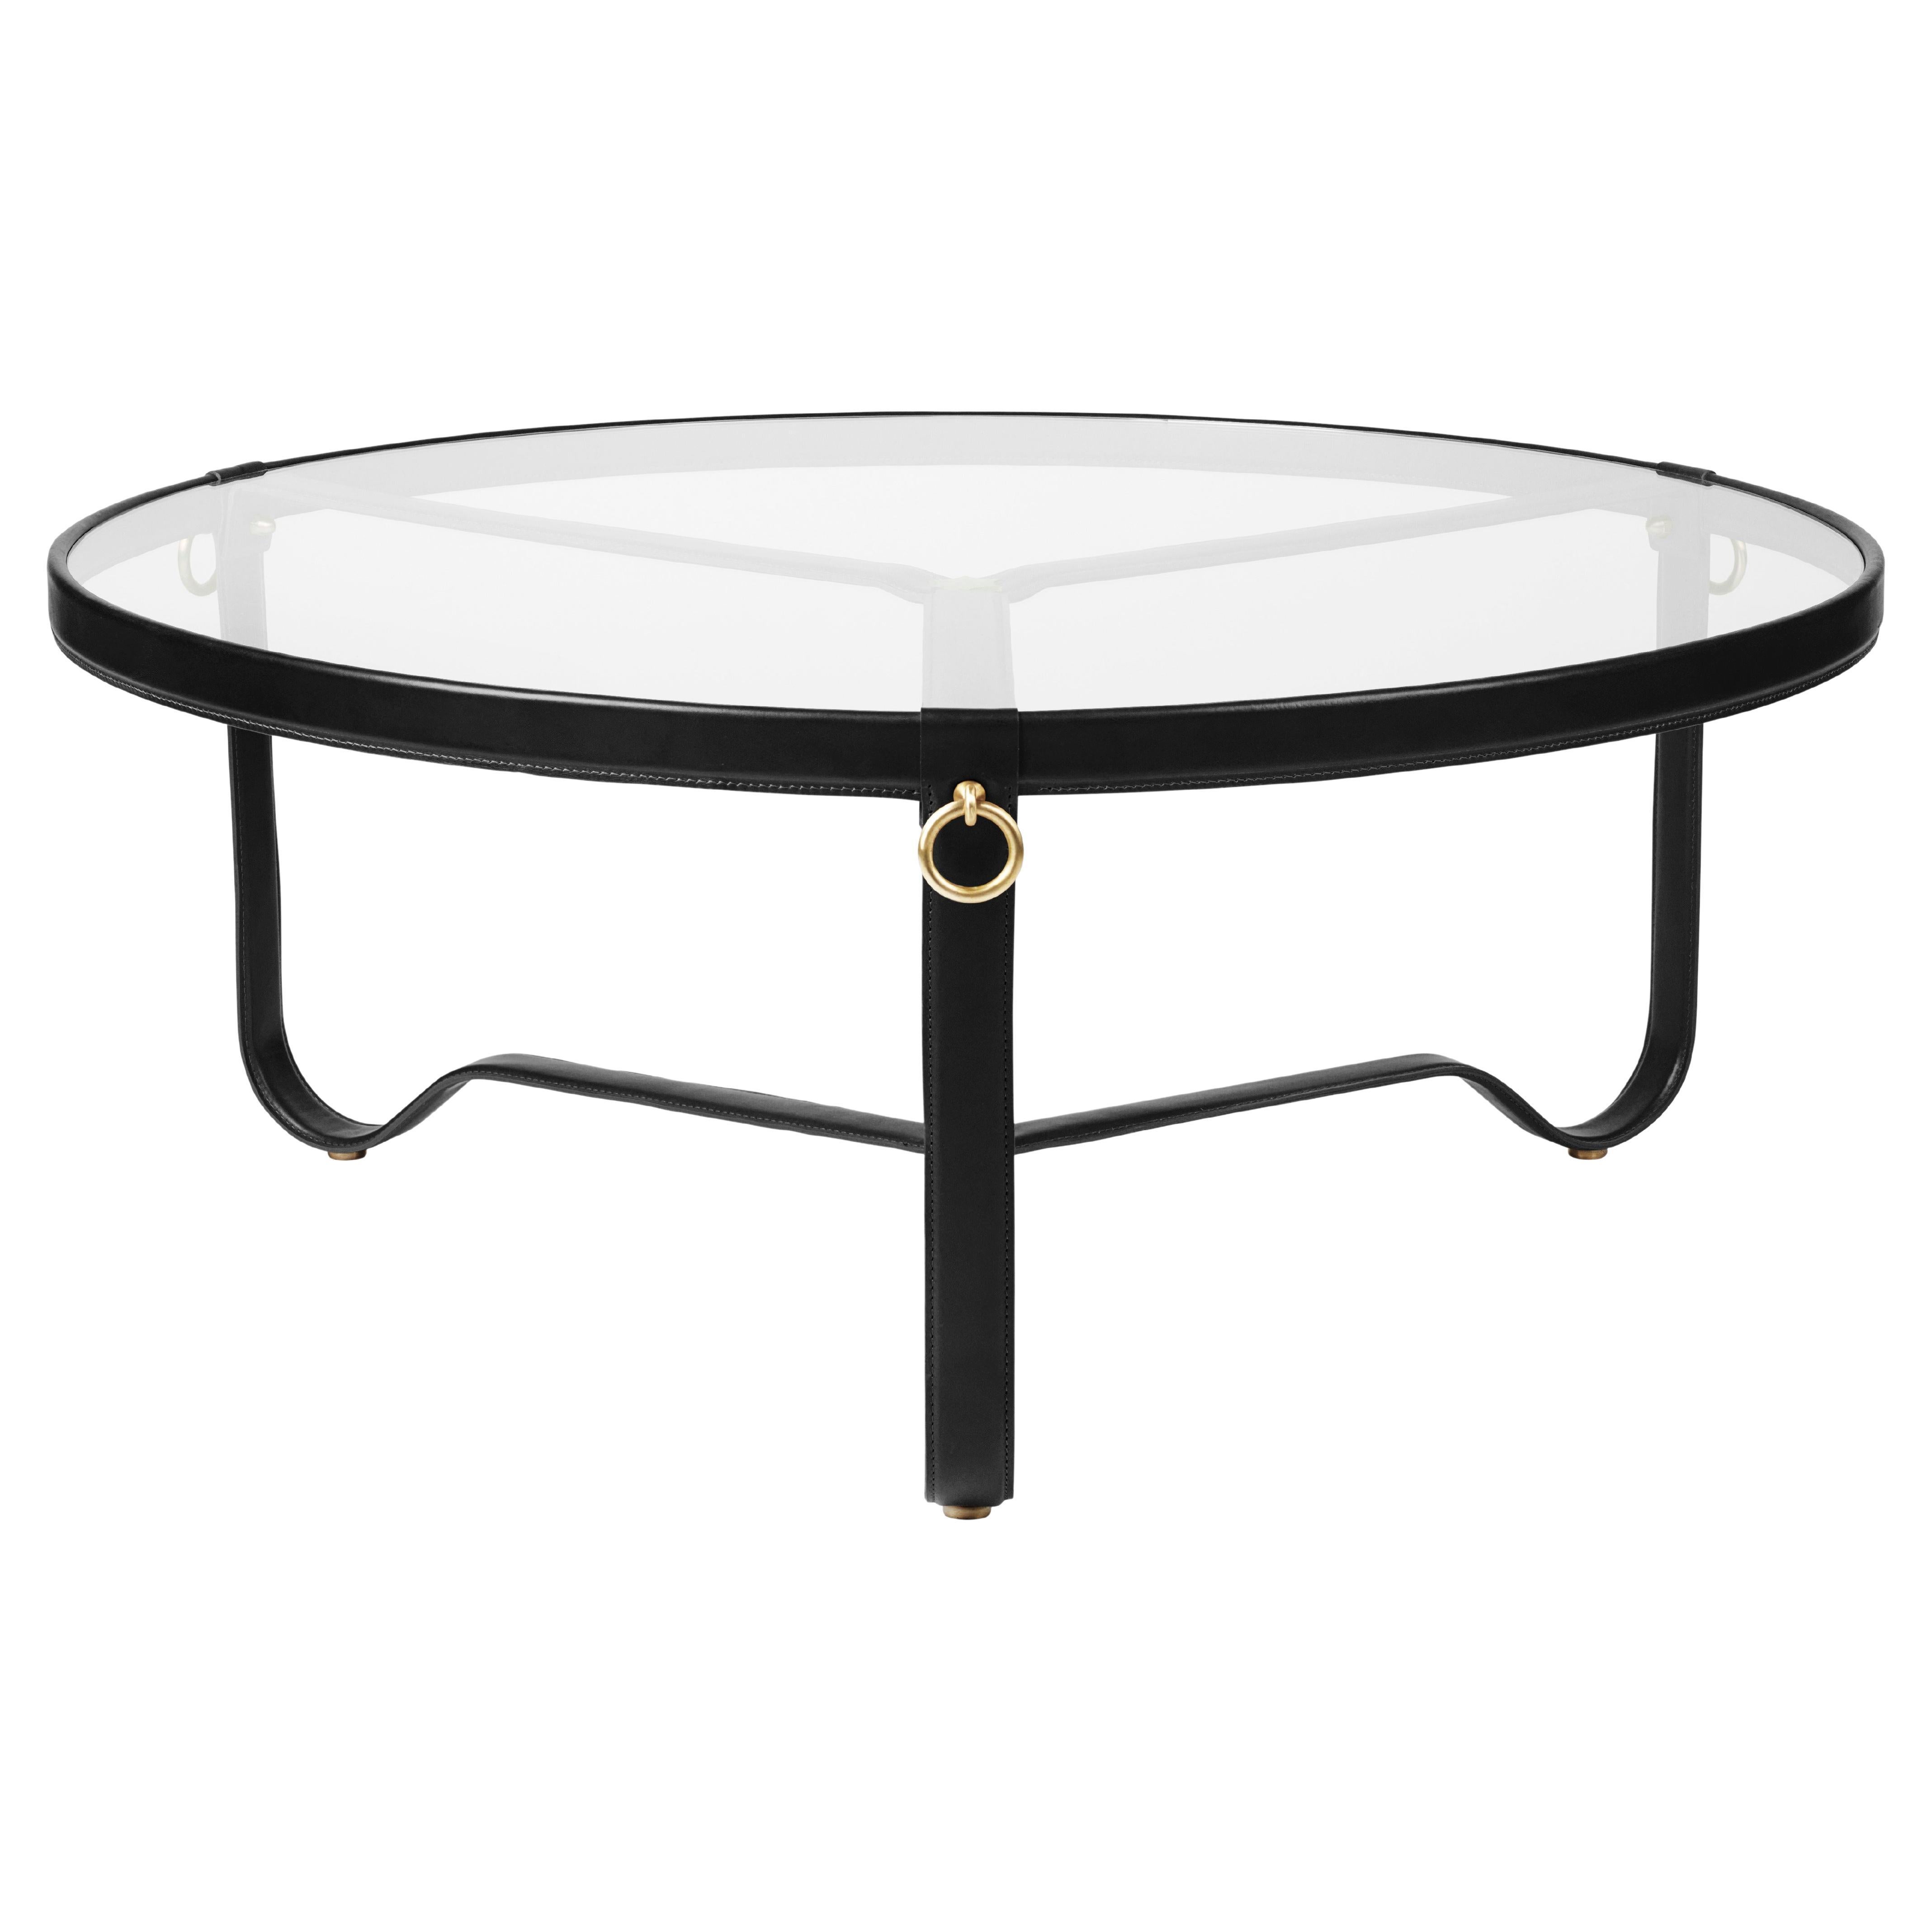 Grande table basse en verre et cuir noir 'Circulaire' de Jacques Adnet pour GUBI